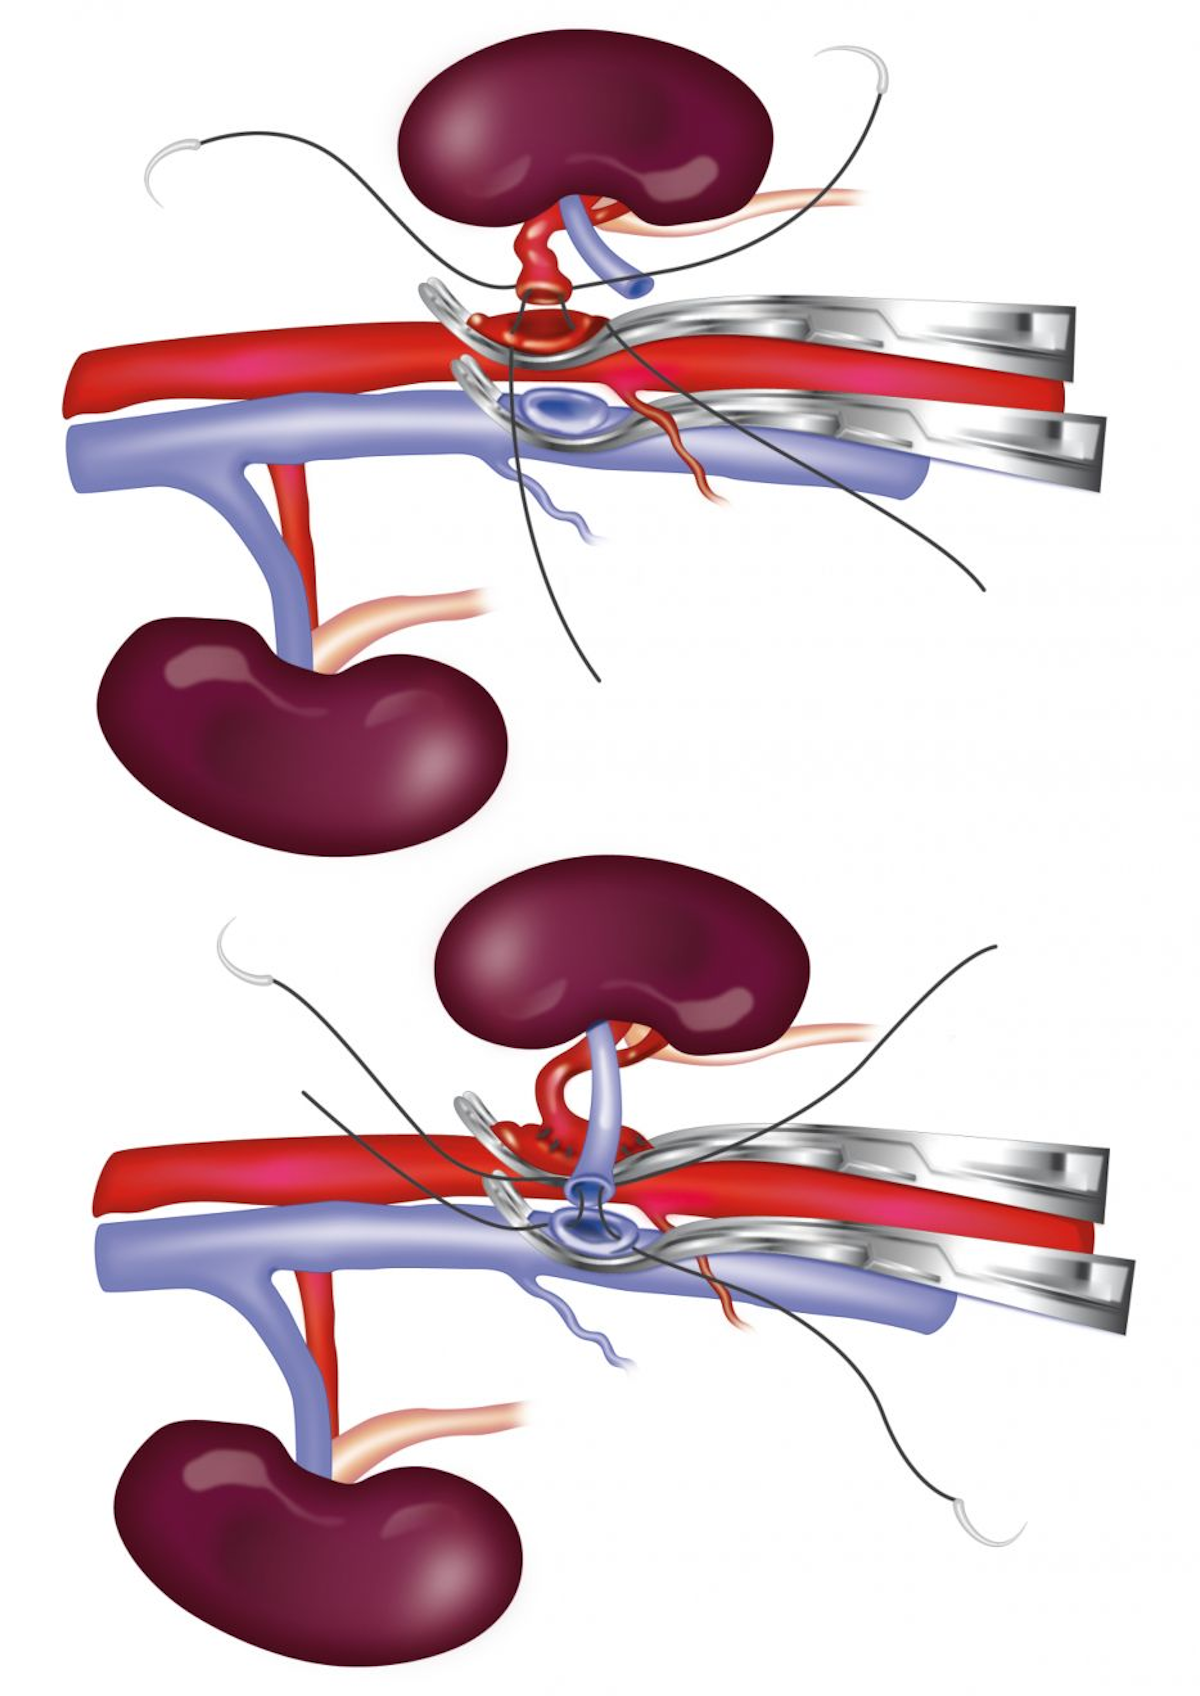 Schematische Darstellung einer End-zu-Seit-Anastomose des renalen Allotransplantates an die abdominale Aorta und die Vena cava des Empfängers. Die Nierenarterie (Bild oben) wird mittels End-zu-Seit-Anastomose mit 8-0 Nylon mit der Aorta verbunden, und die Nierenvene (Bild unten) wird mittels End-zu-Seit-Anastomose mit 7-0 Seide mit der V. cava verbunden.